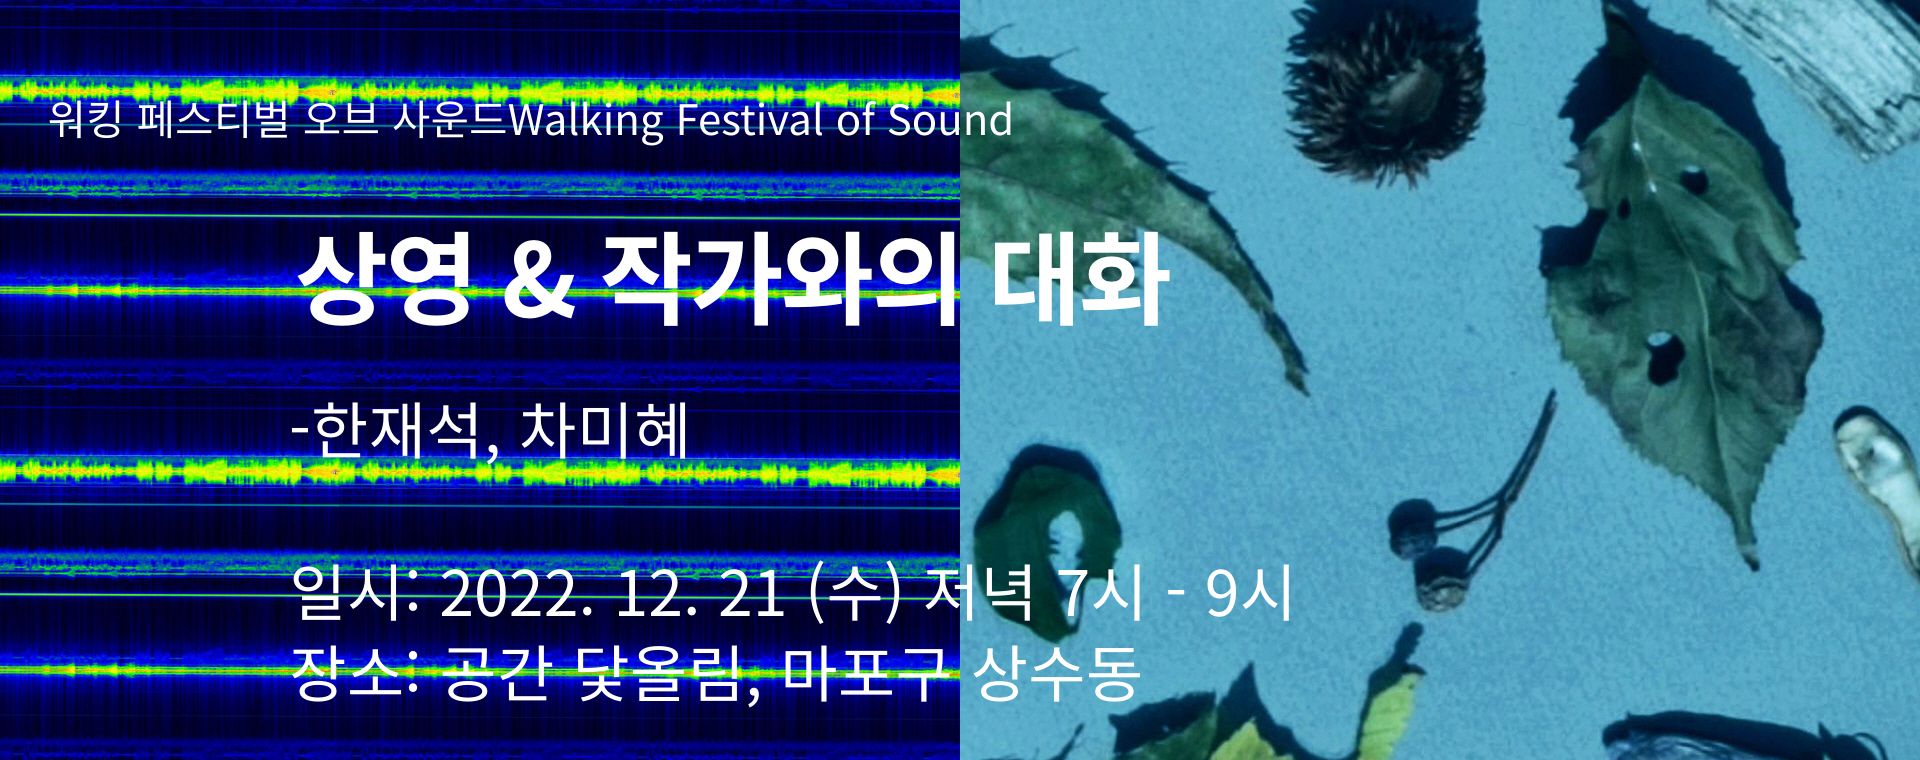 [손세희(13기) 프로젝트] 워킹 페스티벌 오브 사운드 <상영 & 작가와의 대화 - 한재석, 차미혜> image